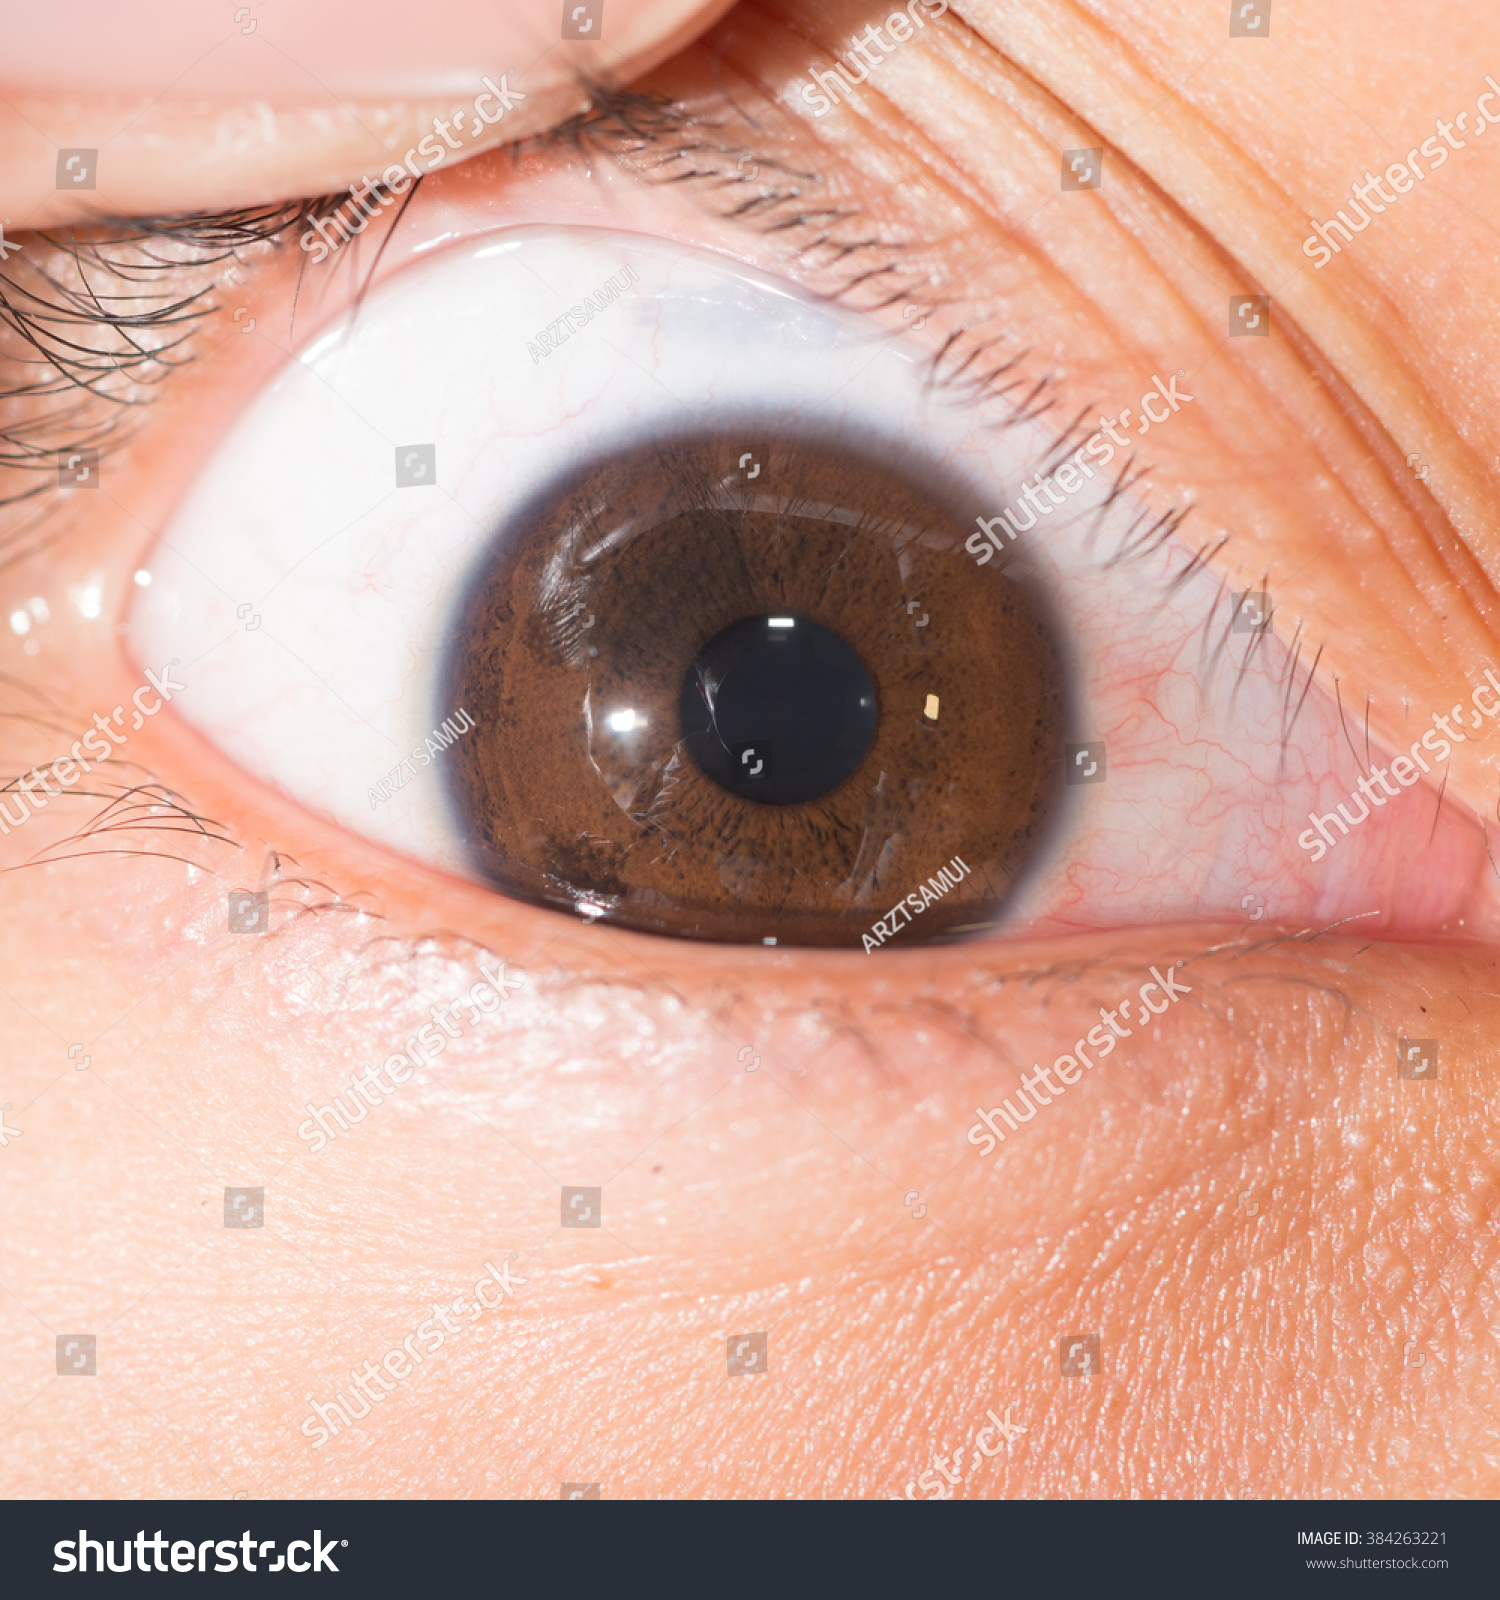 Close Up Of The Iris Nodule During Eye Examination. Stock Photo ...